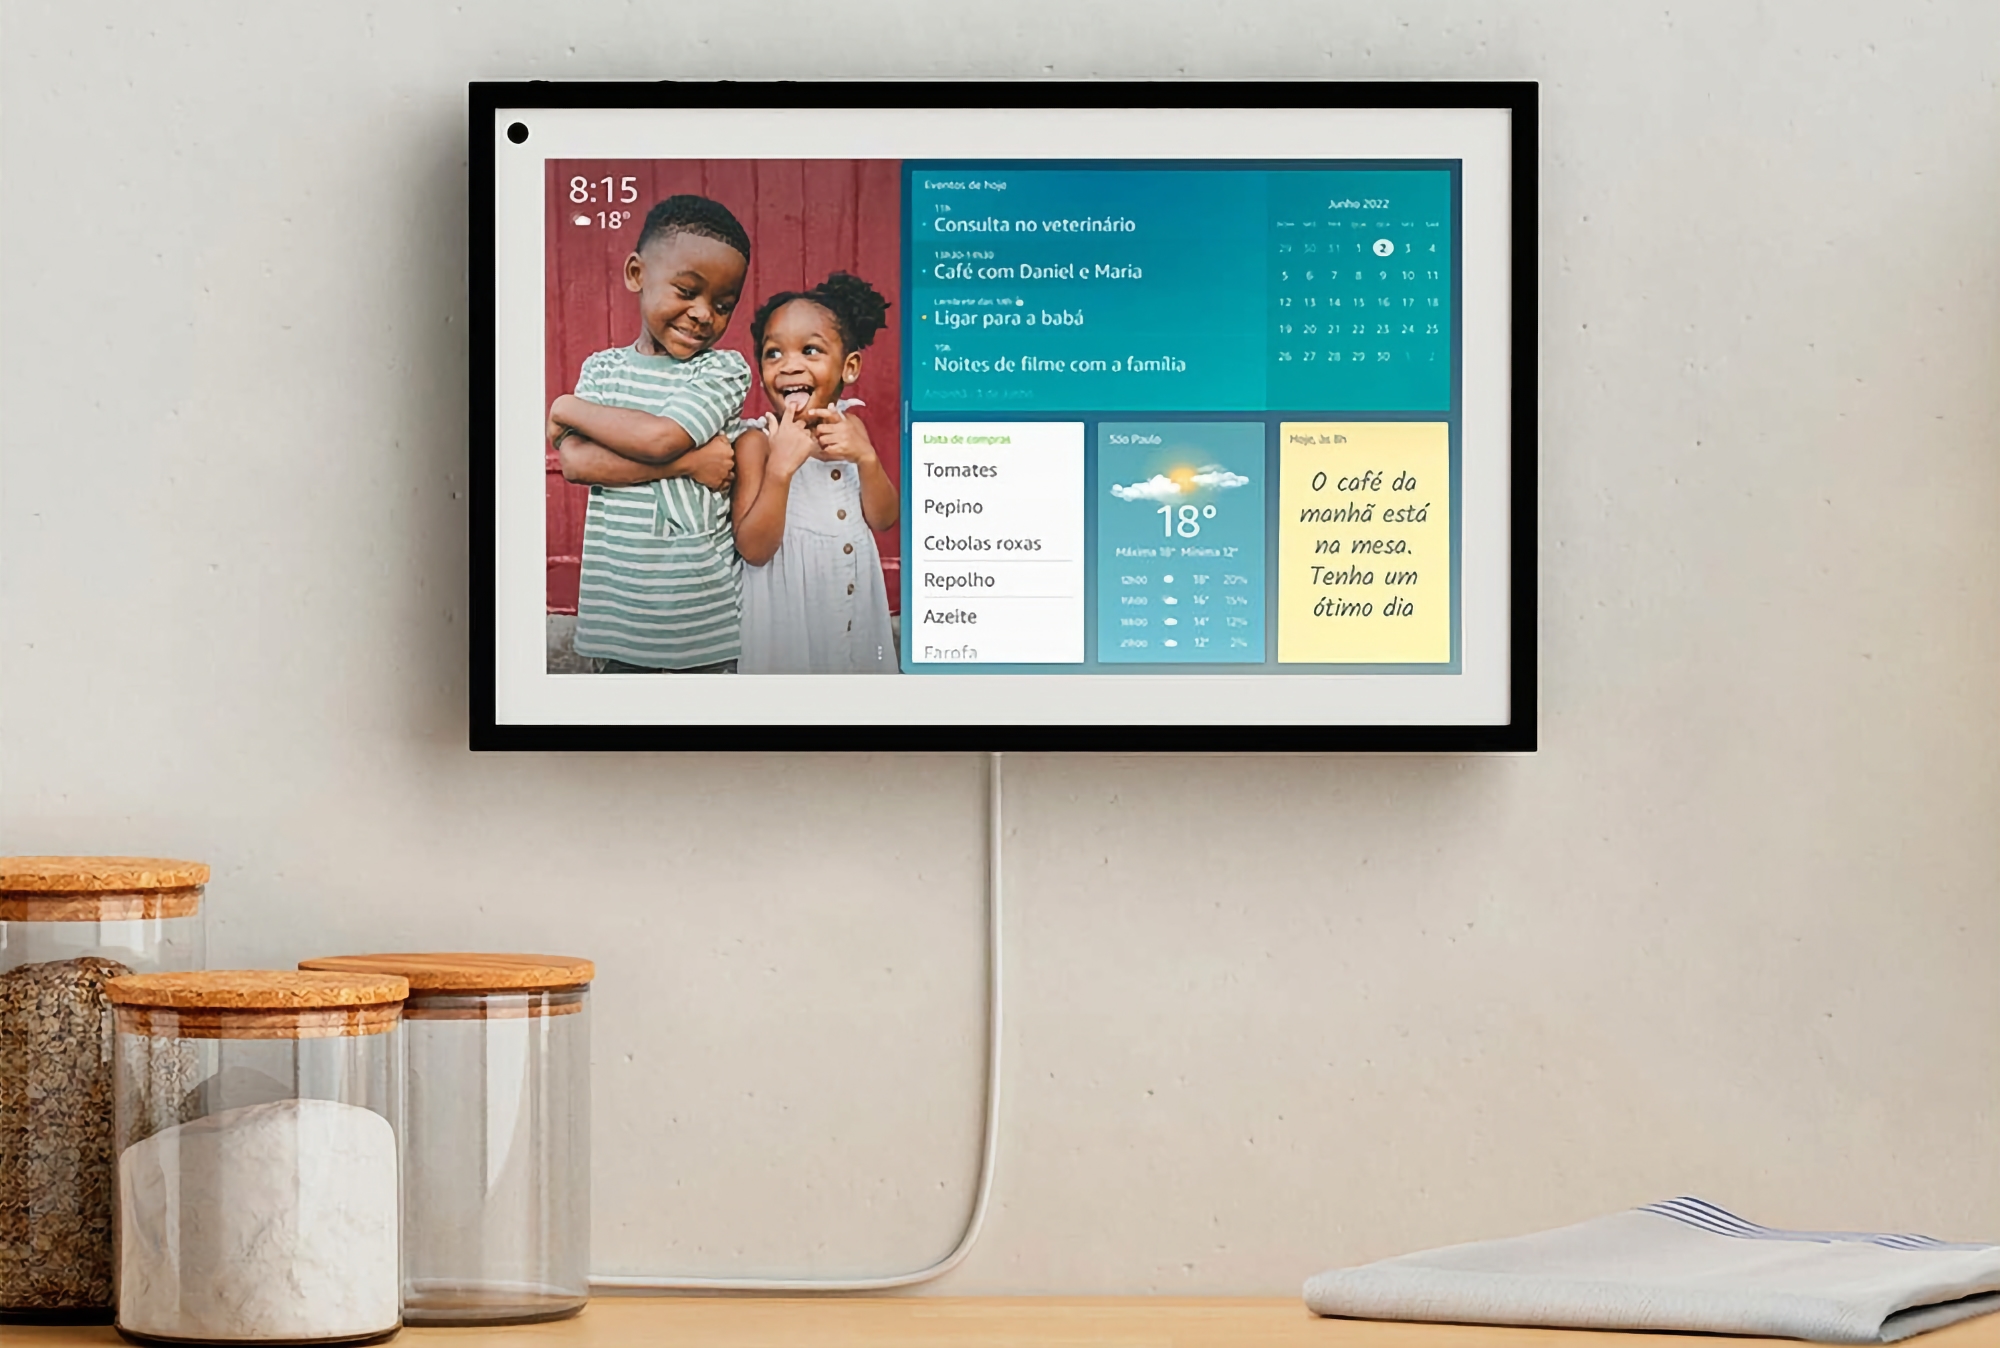 Amazon verkauft Echo Show 15 smartes Display mit 15,6"-Bildschirm und Alexa-Sprachassistent für $80 weniger